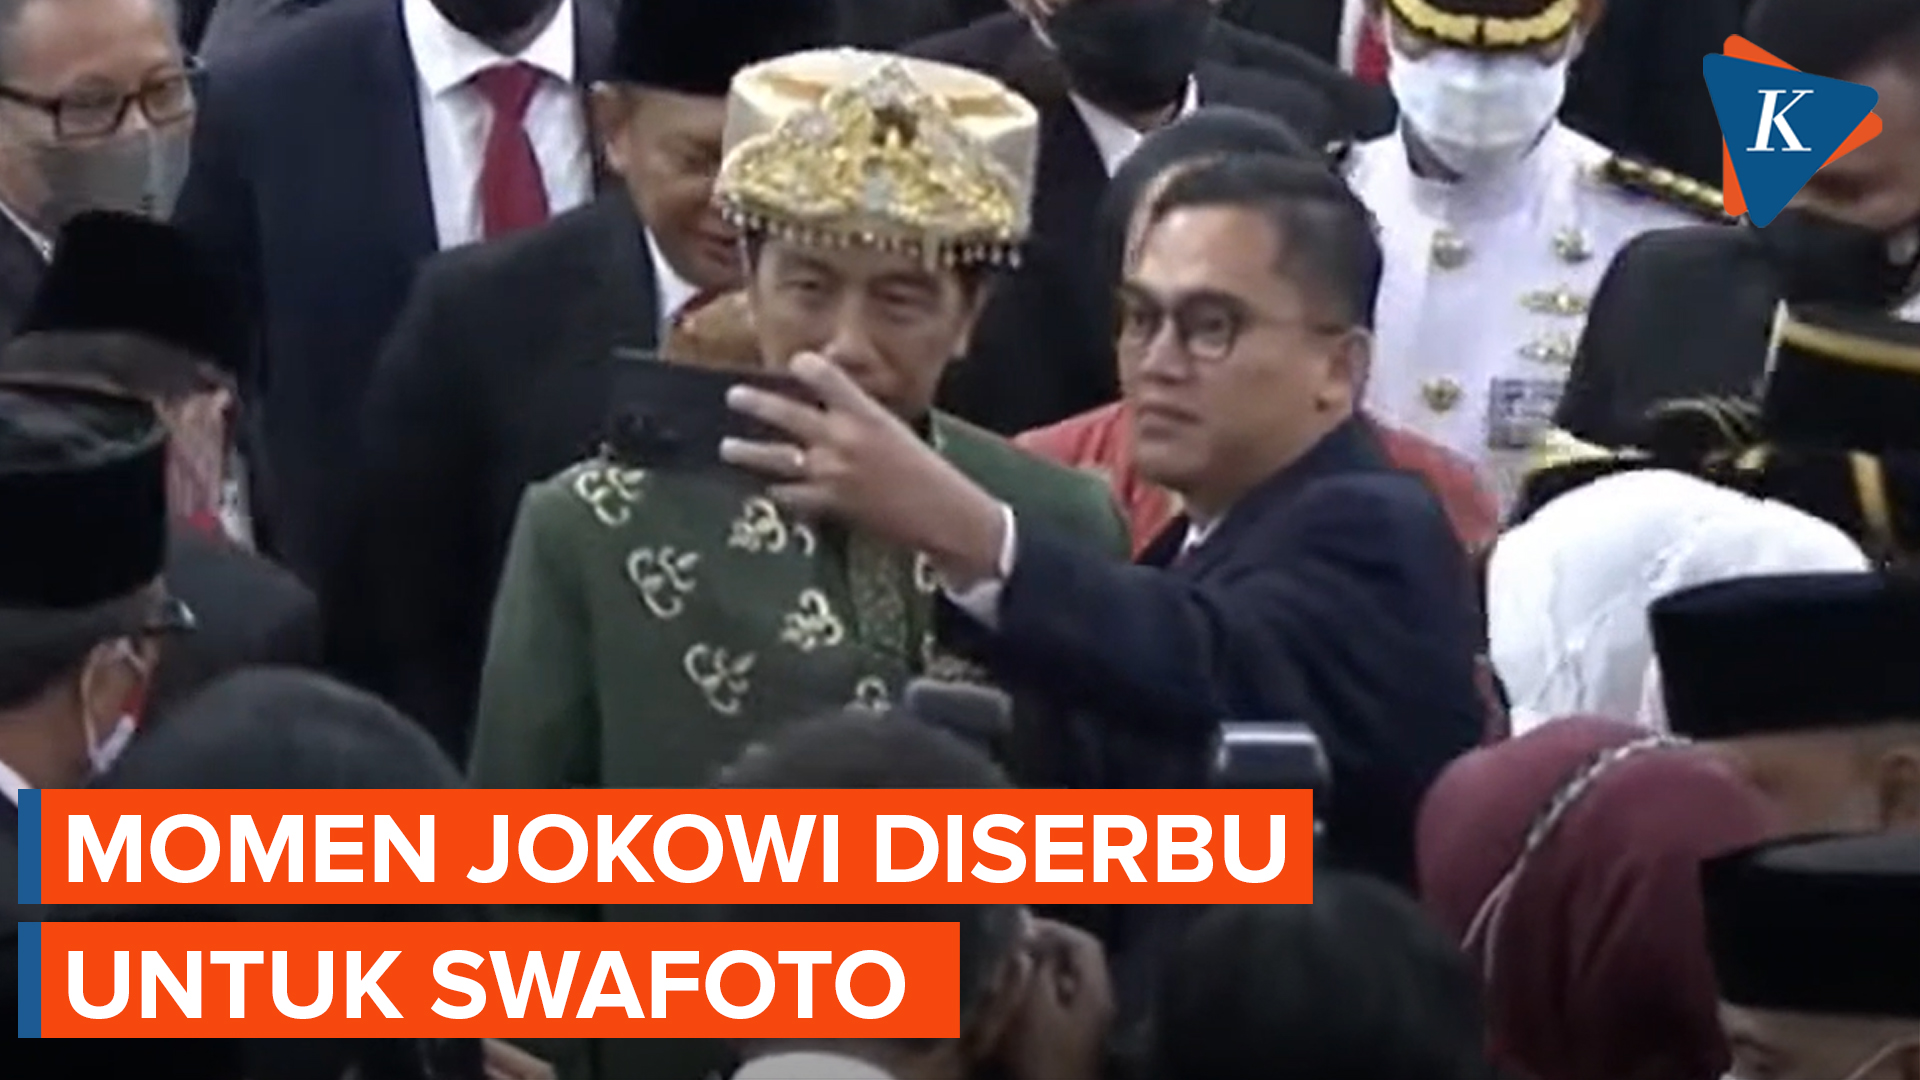 Momen Jokowi Diserbu Anggota DPR Diajak Swafoto